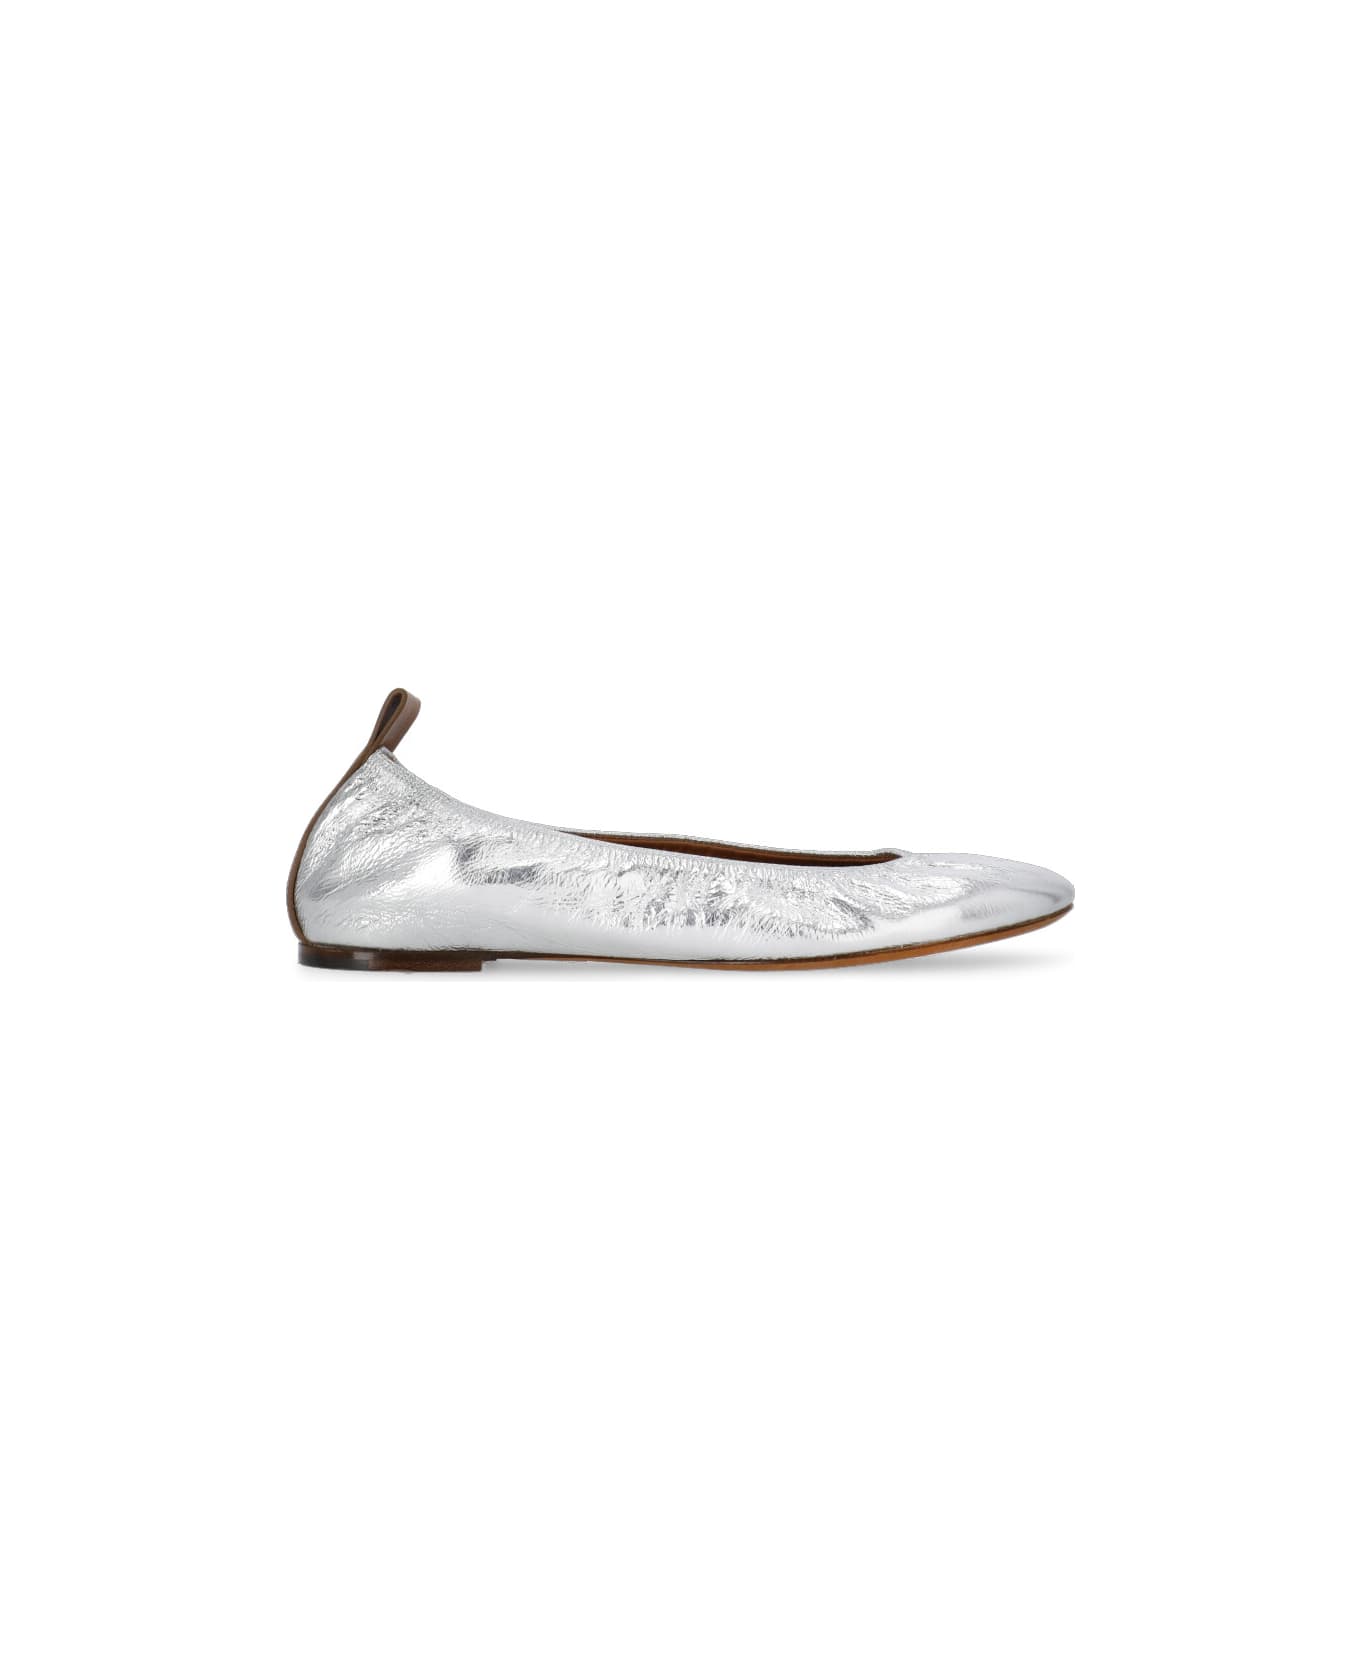 Lanvin Leather Ballet Shoes - Silver